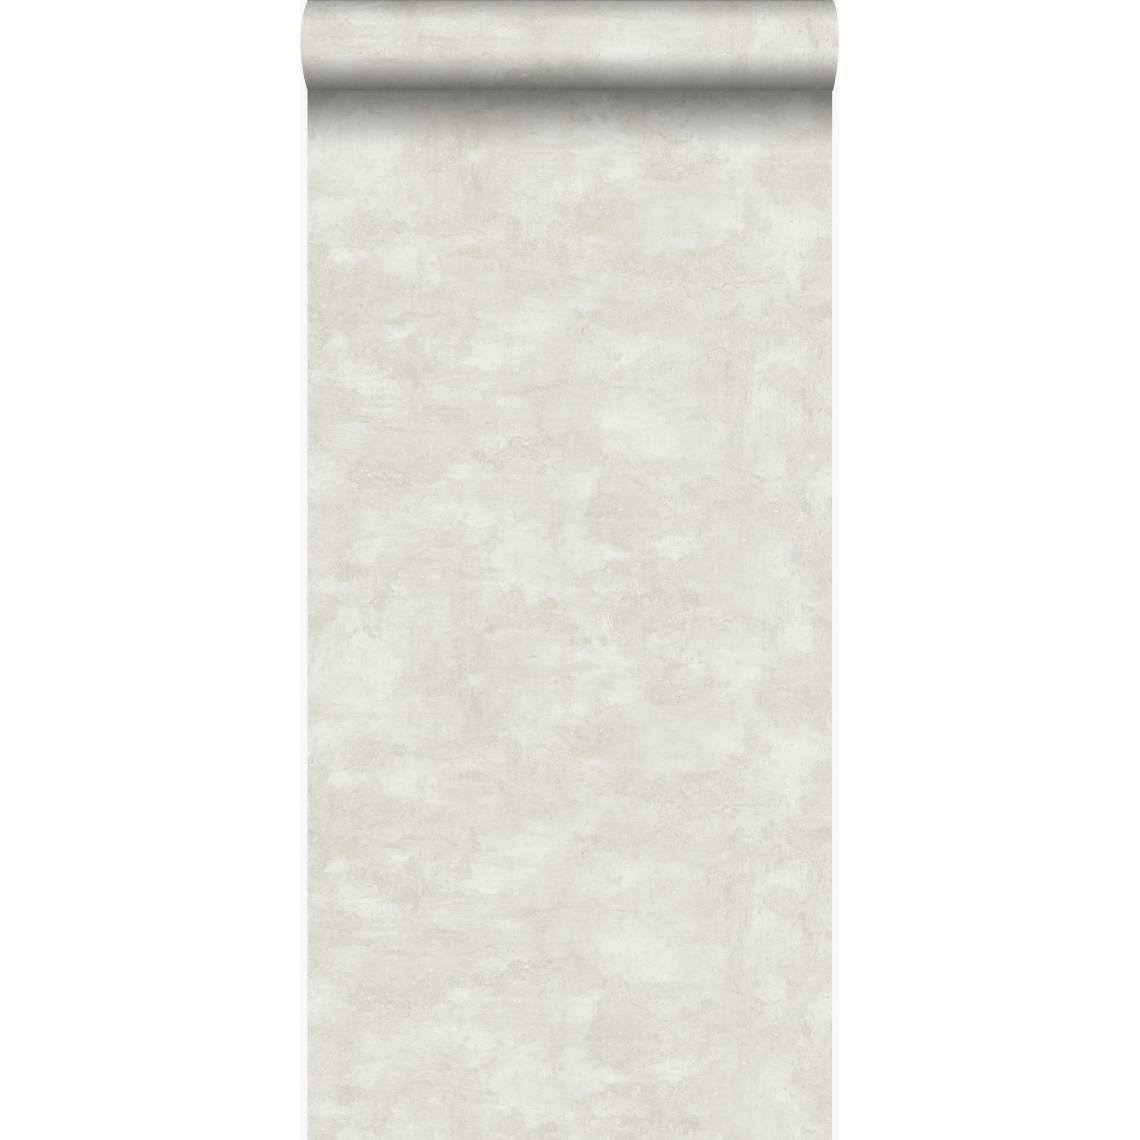 Origin - Origin papier peint effet béton beige clair - 347603 - 53 cm x 10.05 m - Papier peint